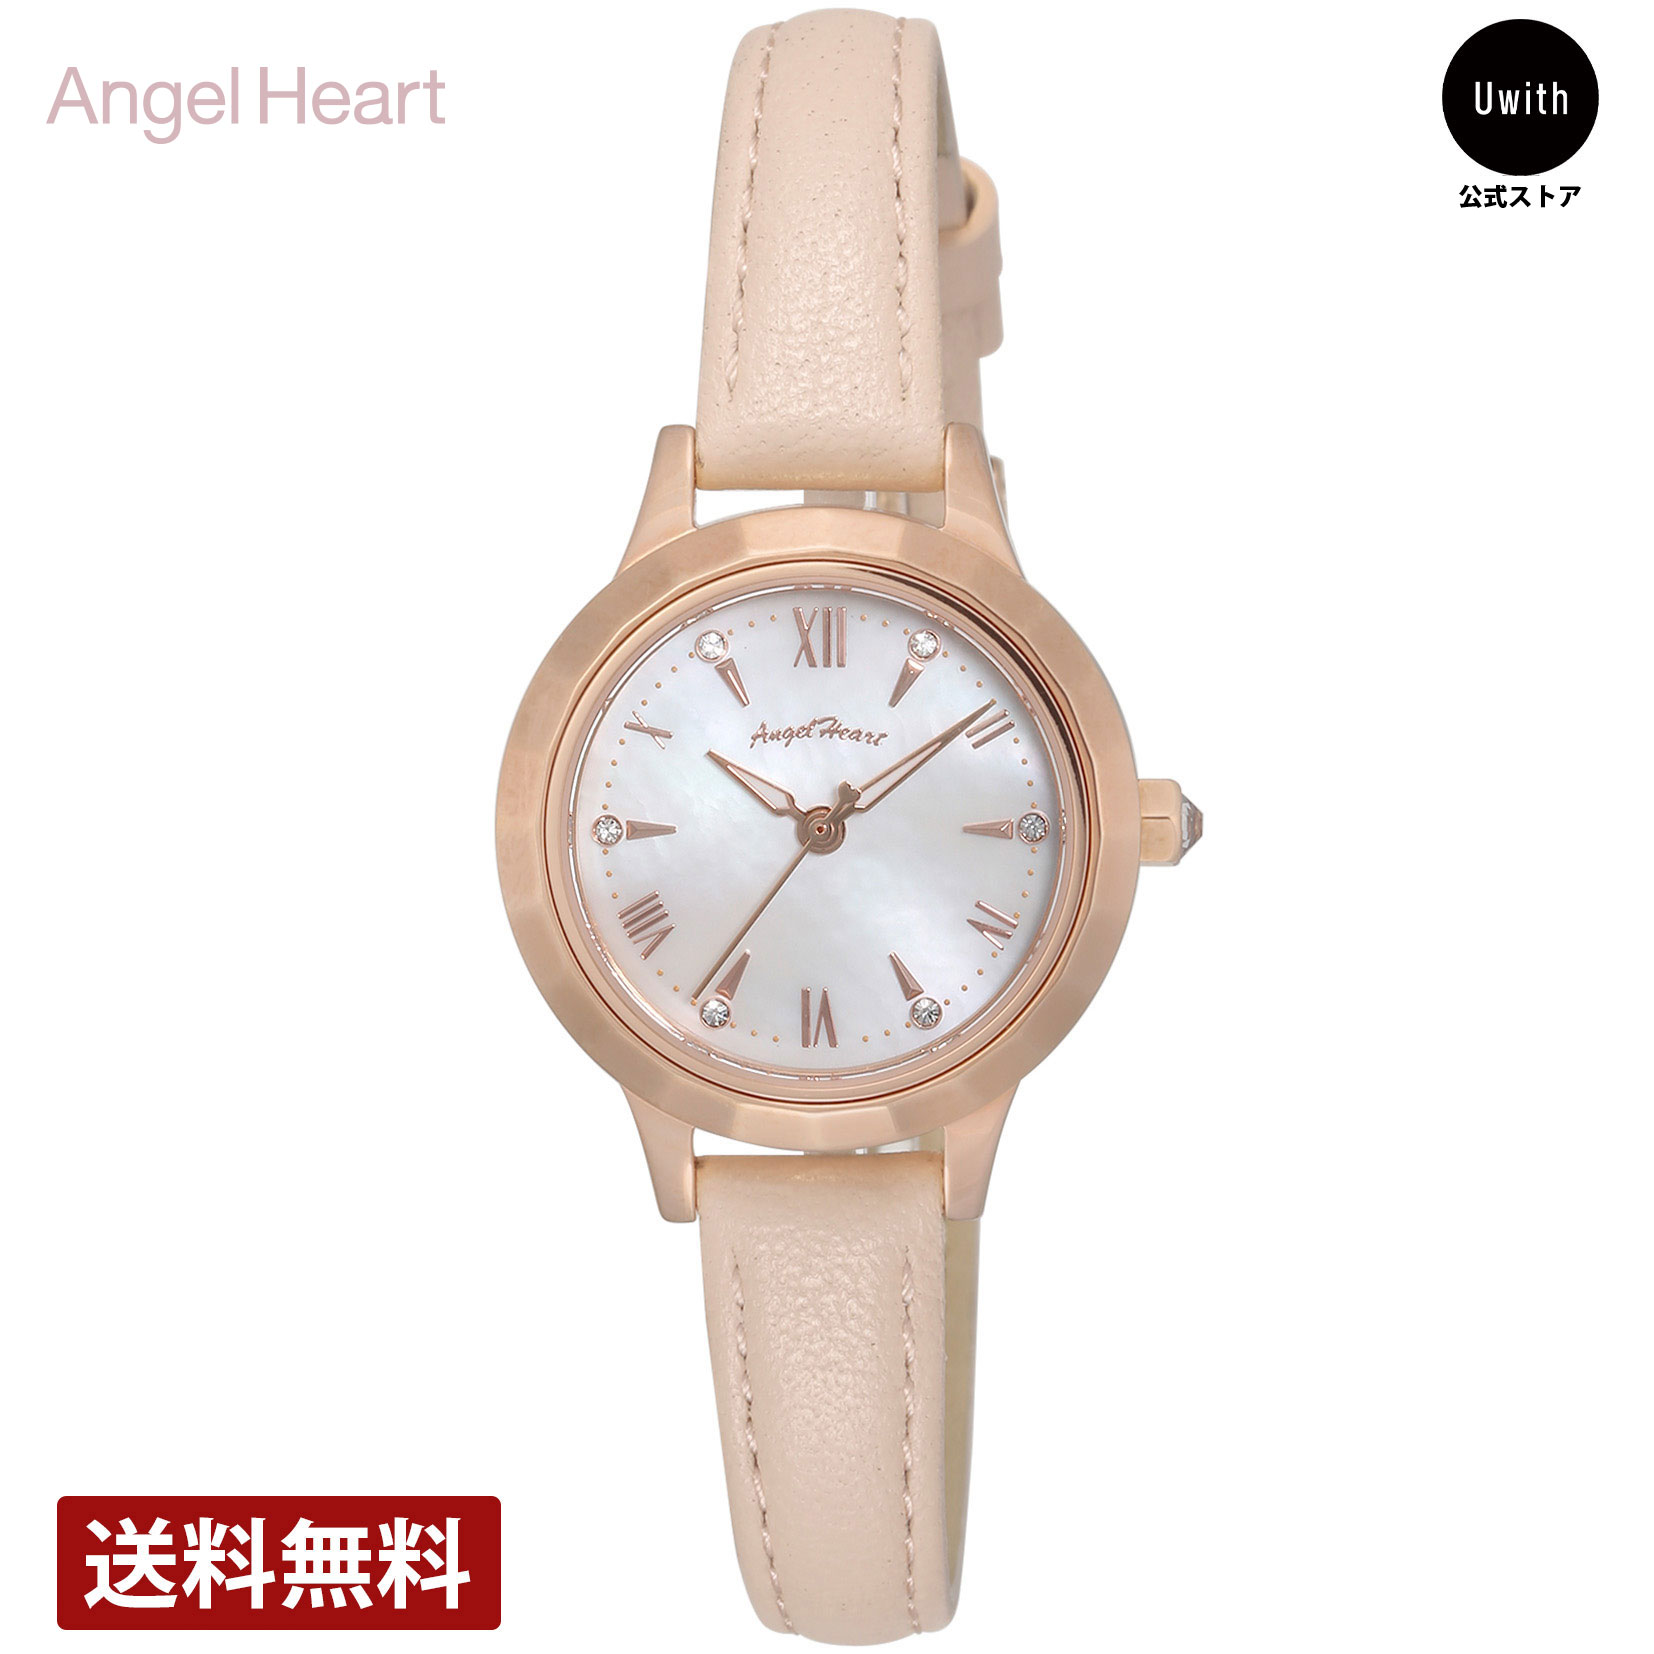 【公式ストア】Angel Heart エンジェルハート レディース腕時計 日本製ムーブメントソーラークォーツ ホワイトパール WLS26P-PK 橋本環奈